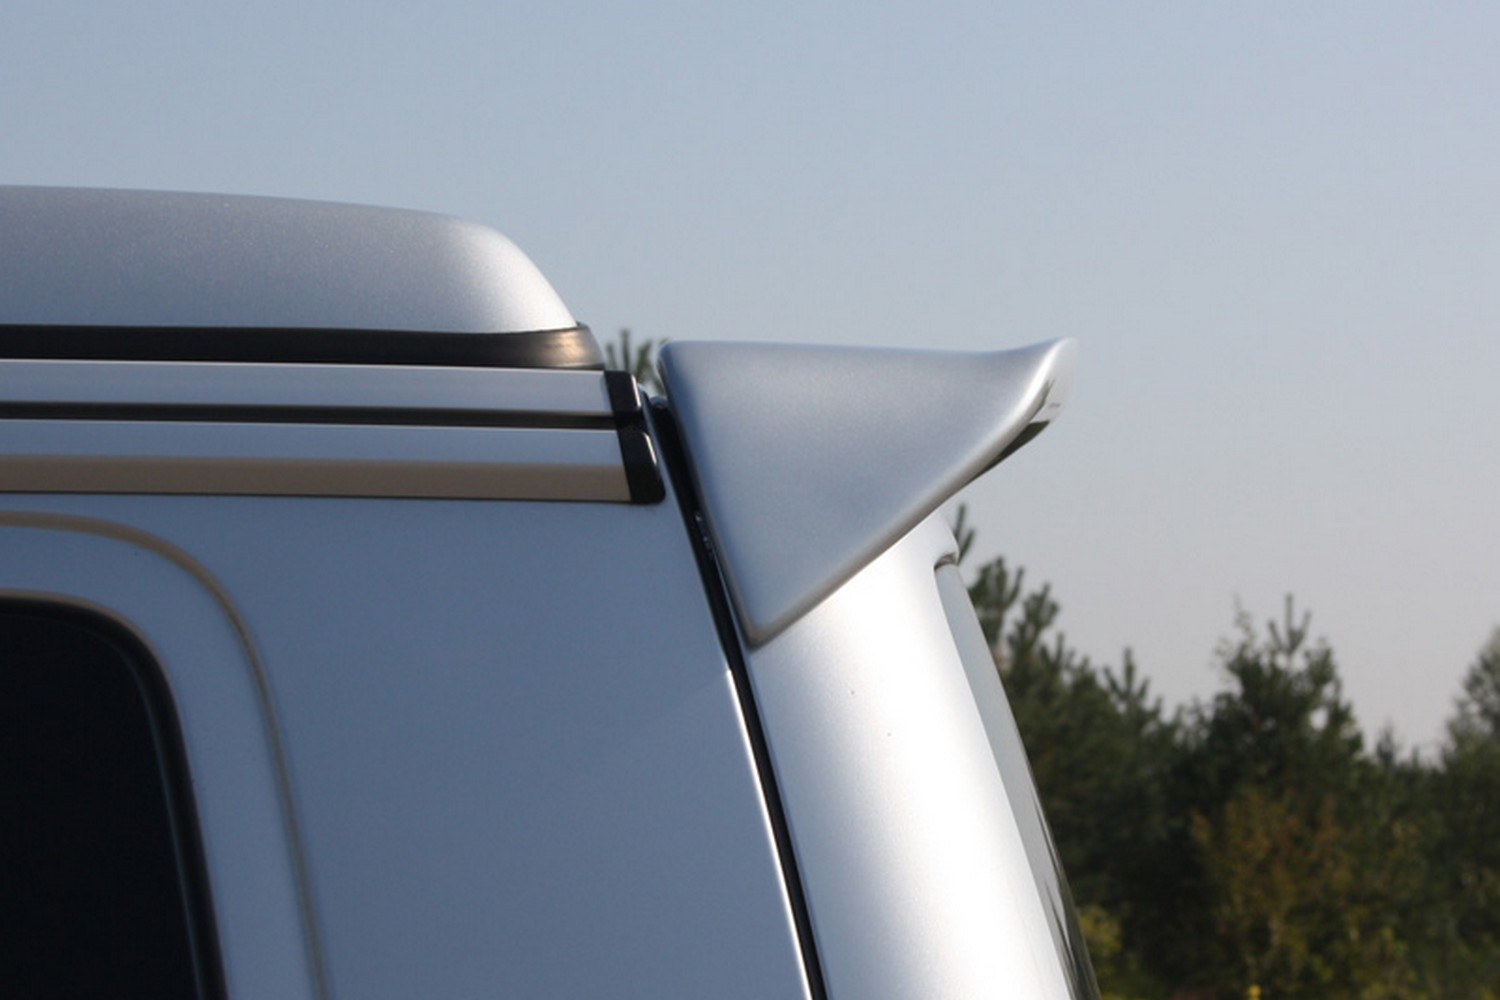  VW Volkswagen T5 Spoiler arrière Spoiler Tuning Nouveau